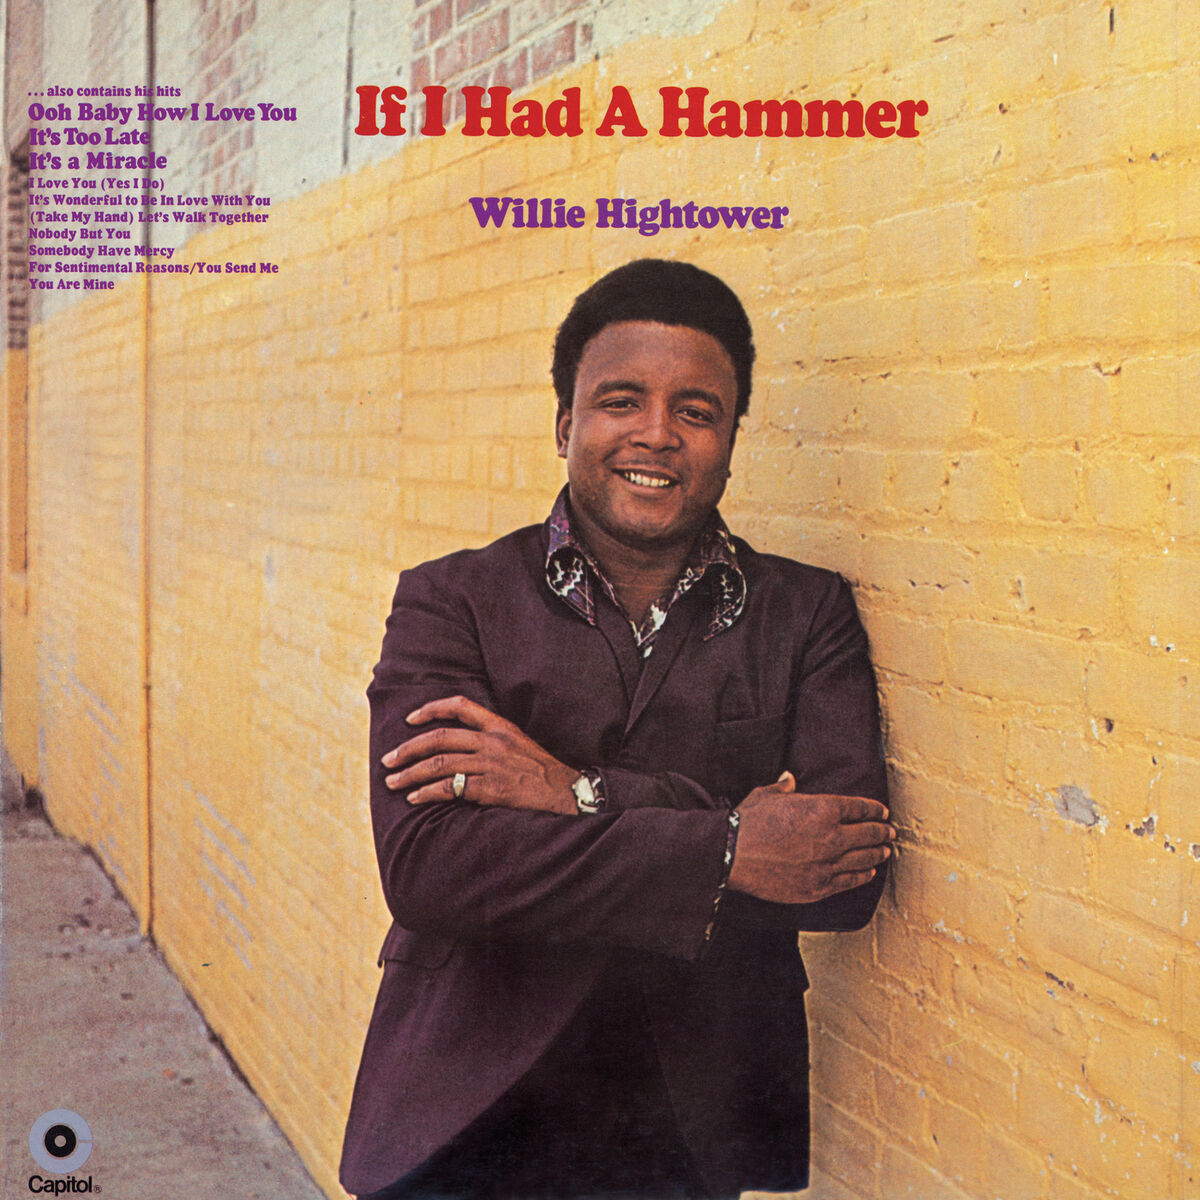 Willie Hightower - (Take My Hand) Let's Walk Together: listen with lyrics |  Deezer